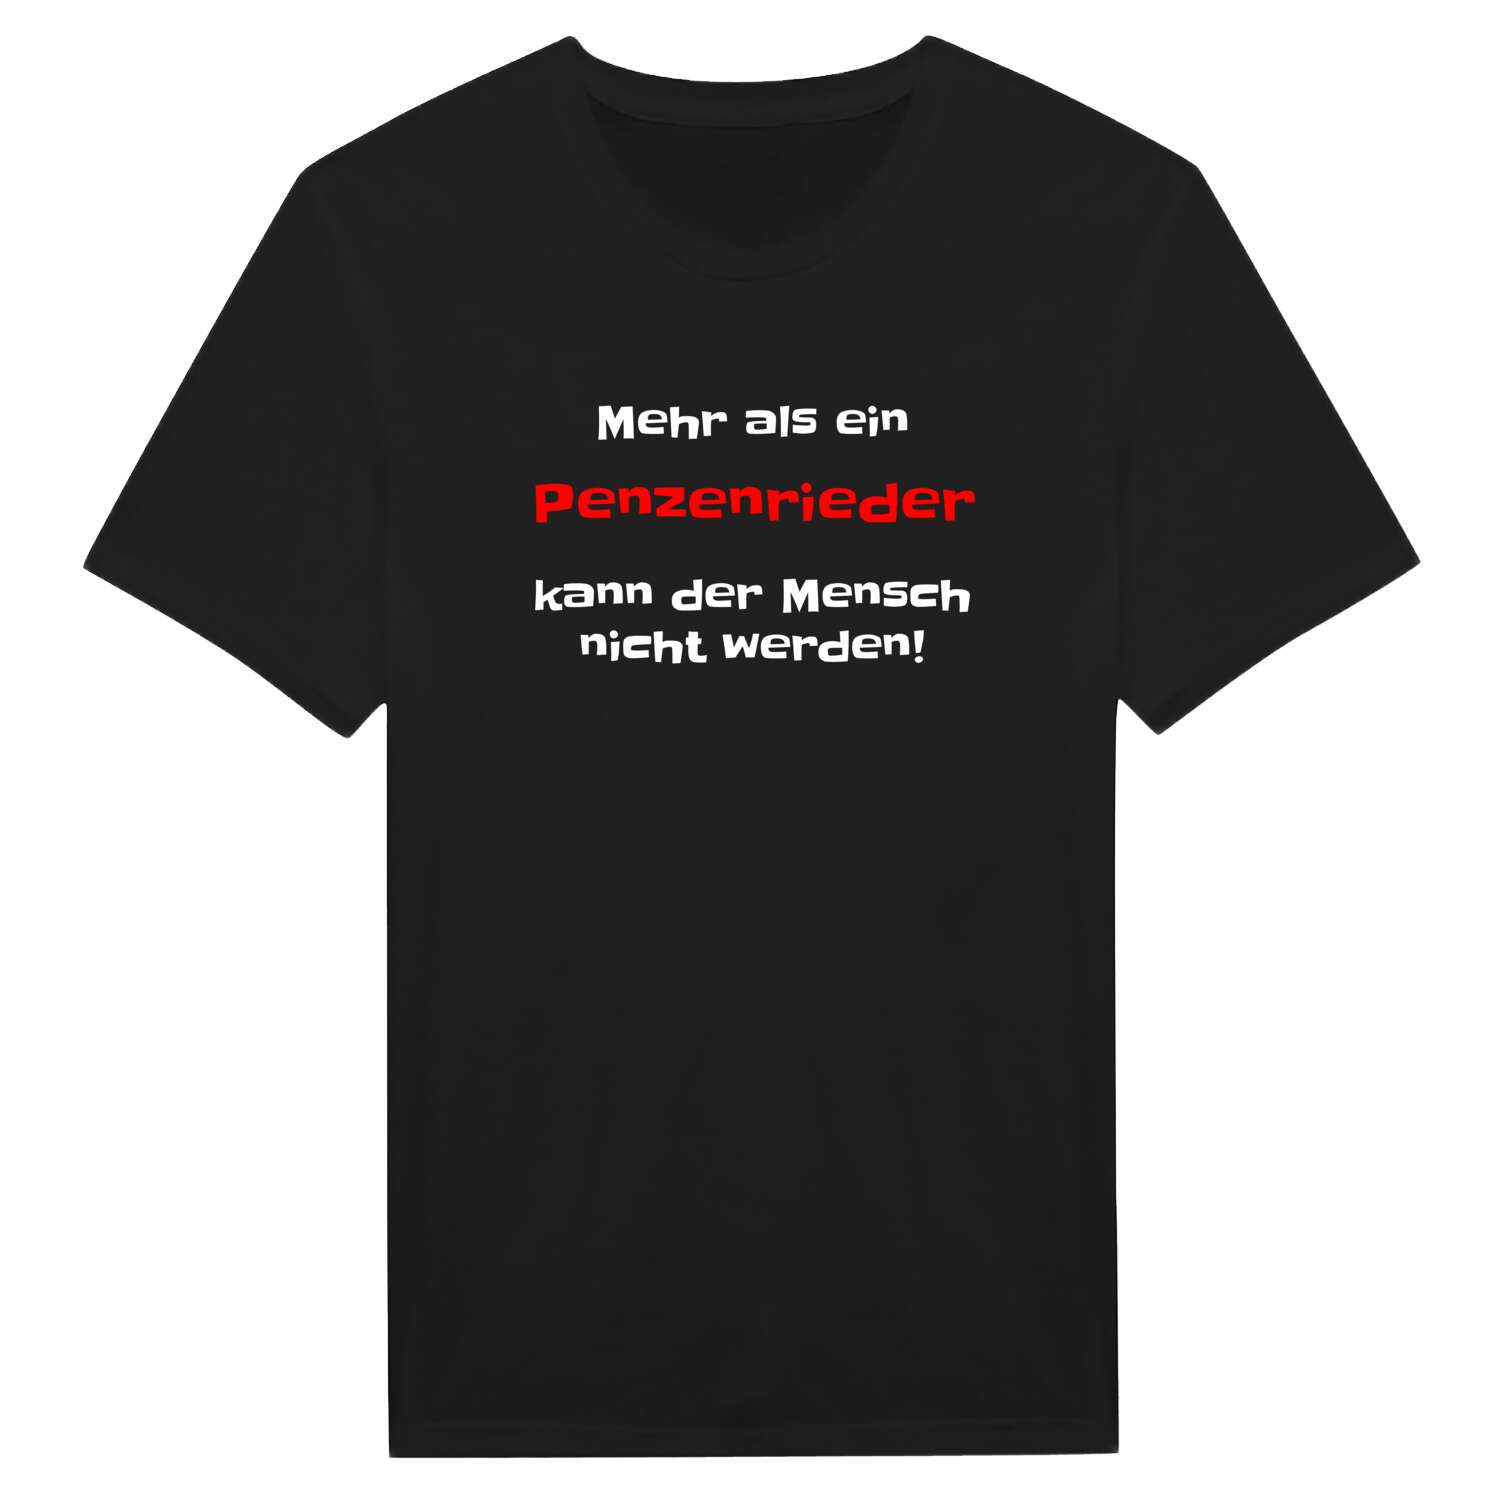 Penzenried T-Shirt »Mehr als ein«